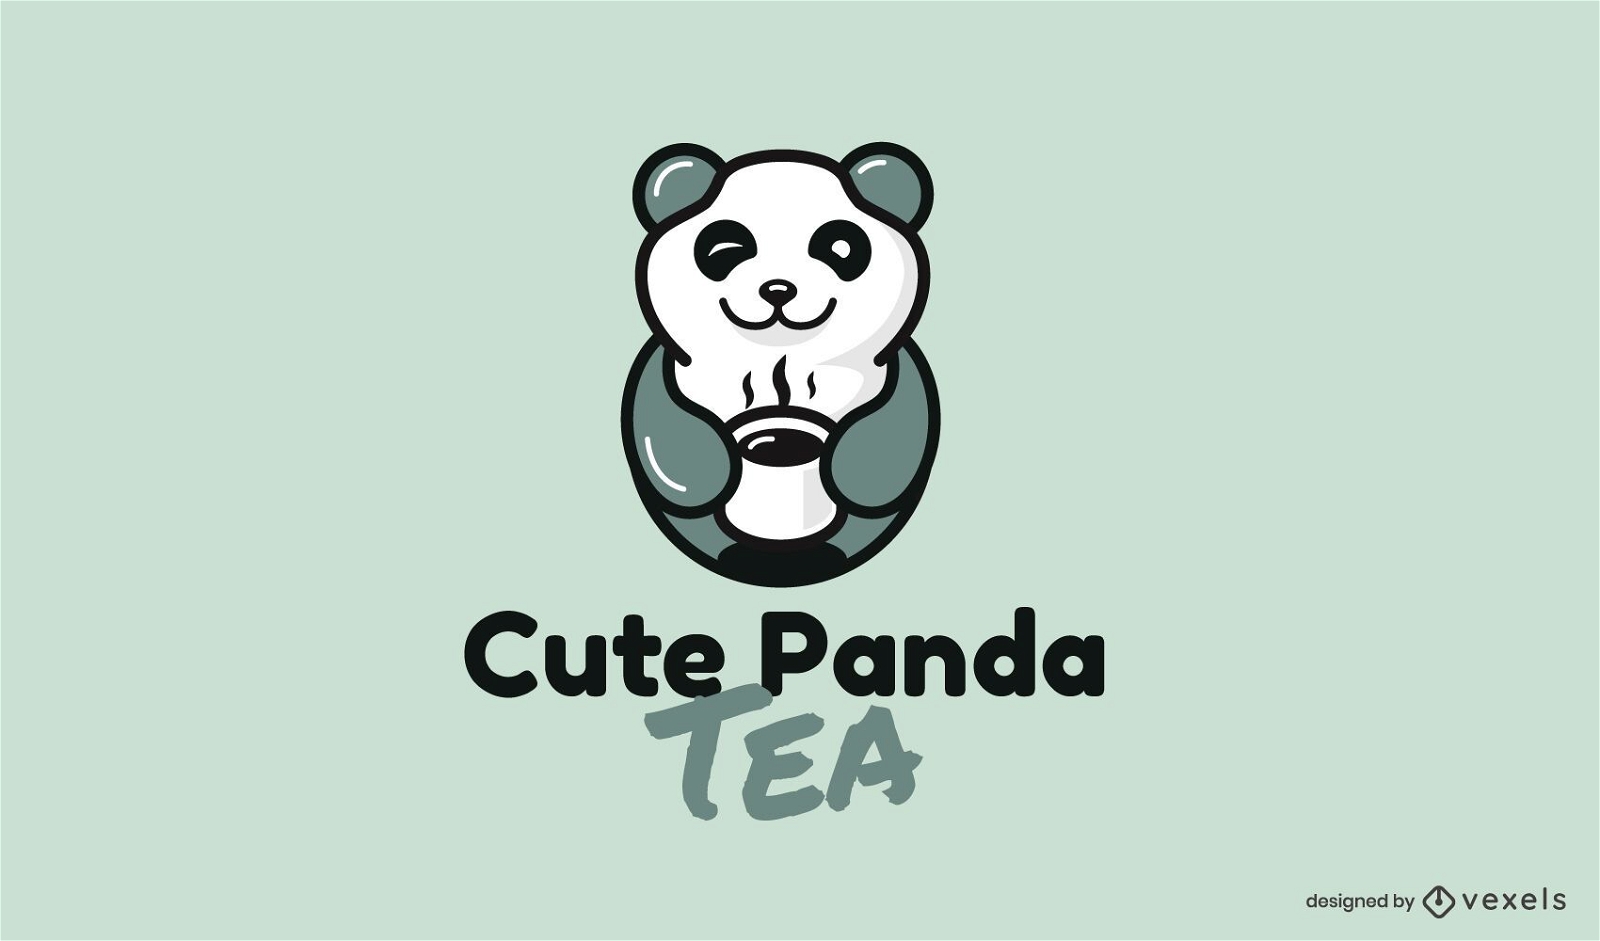 Dise?o lindo del logotipo del animal del oso panda del t?